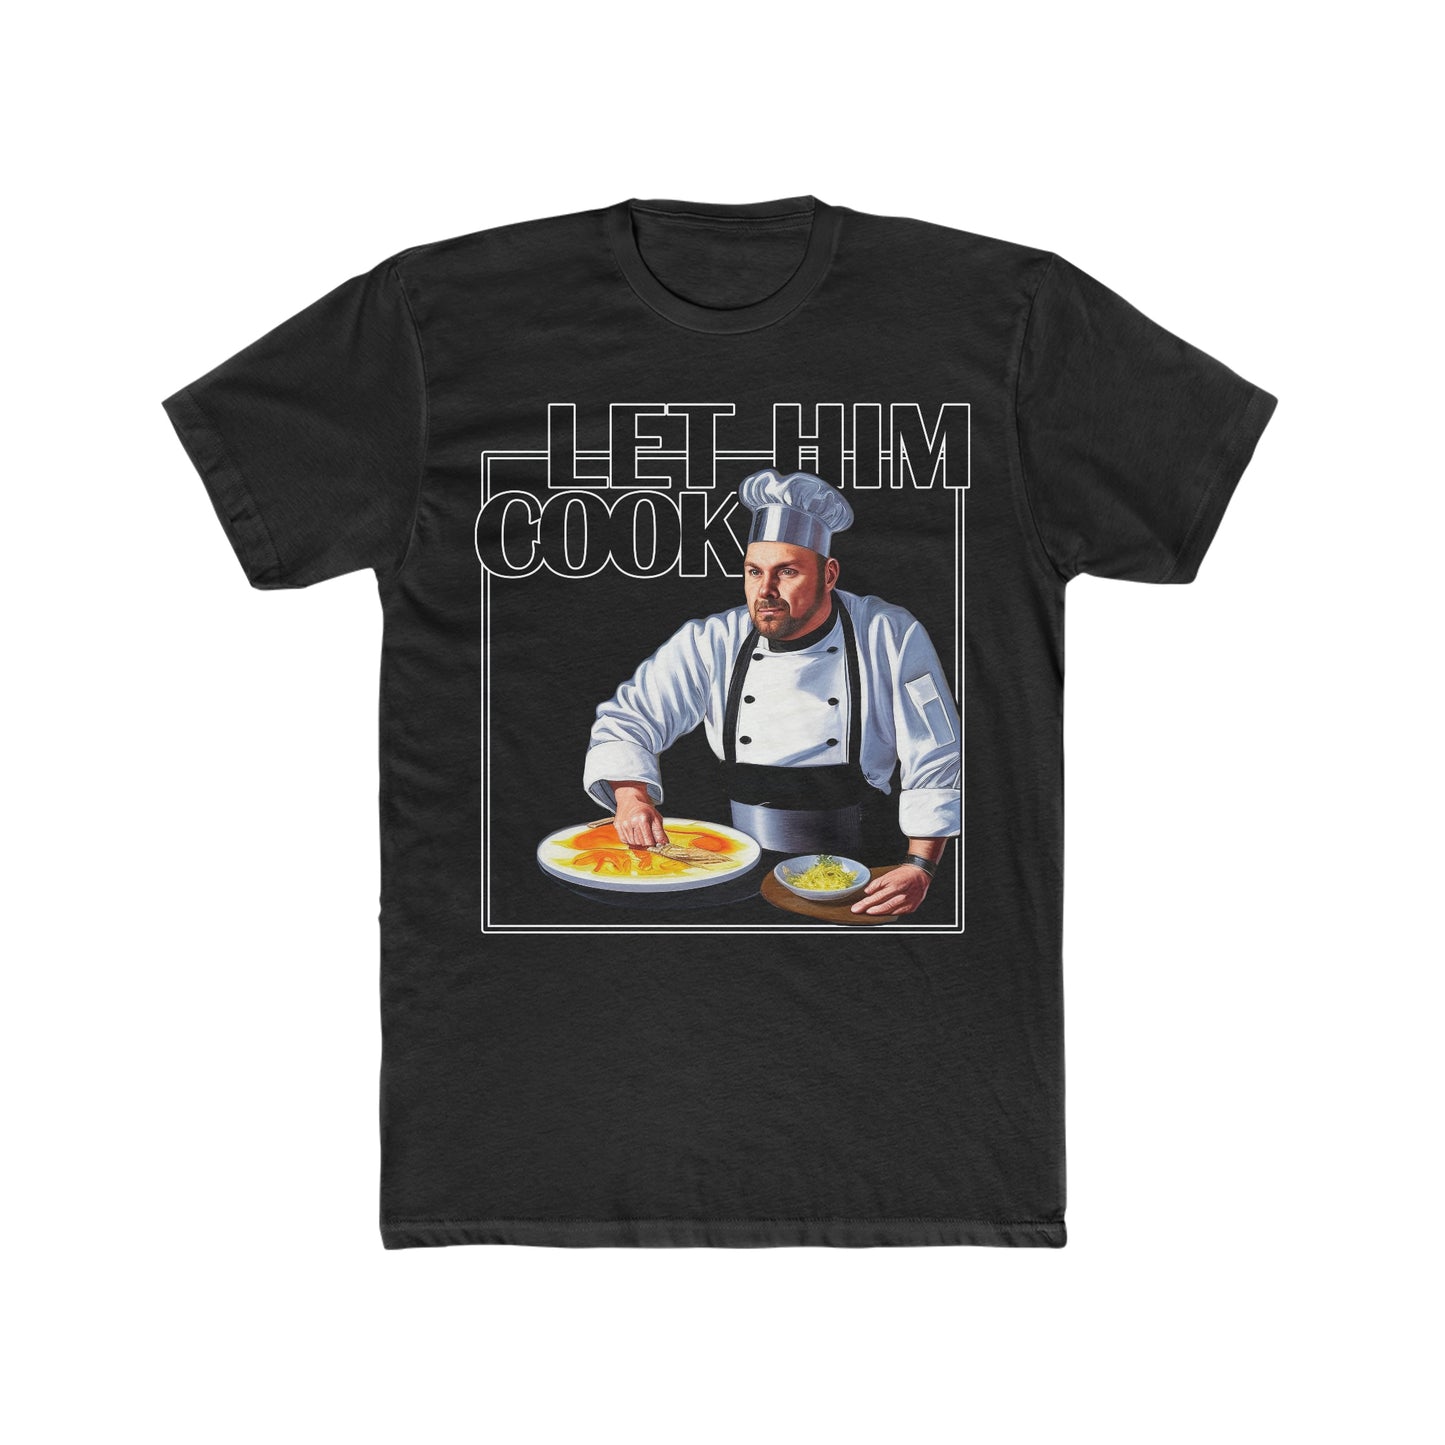 Let Him Cook